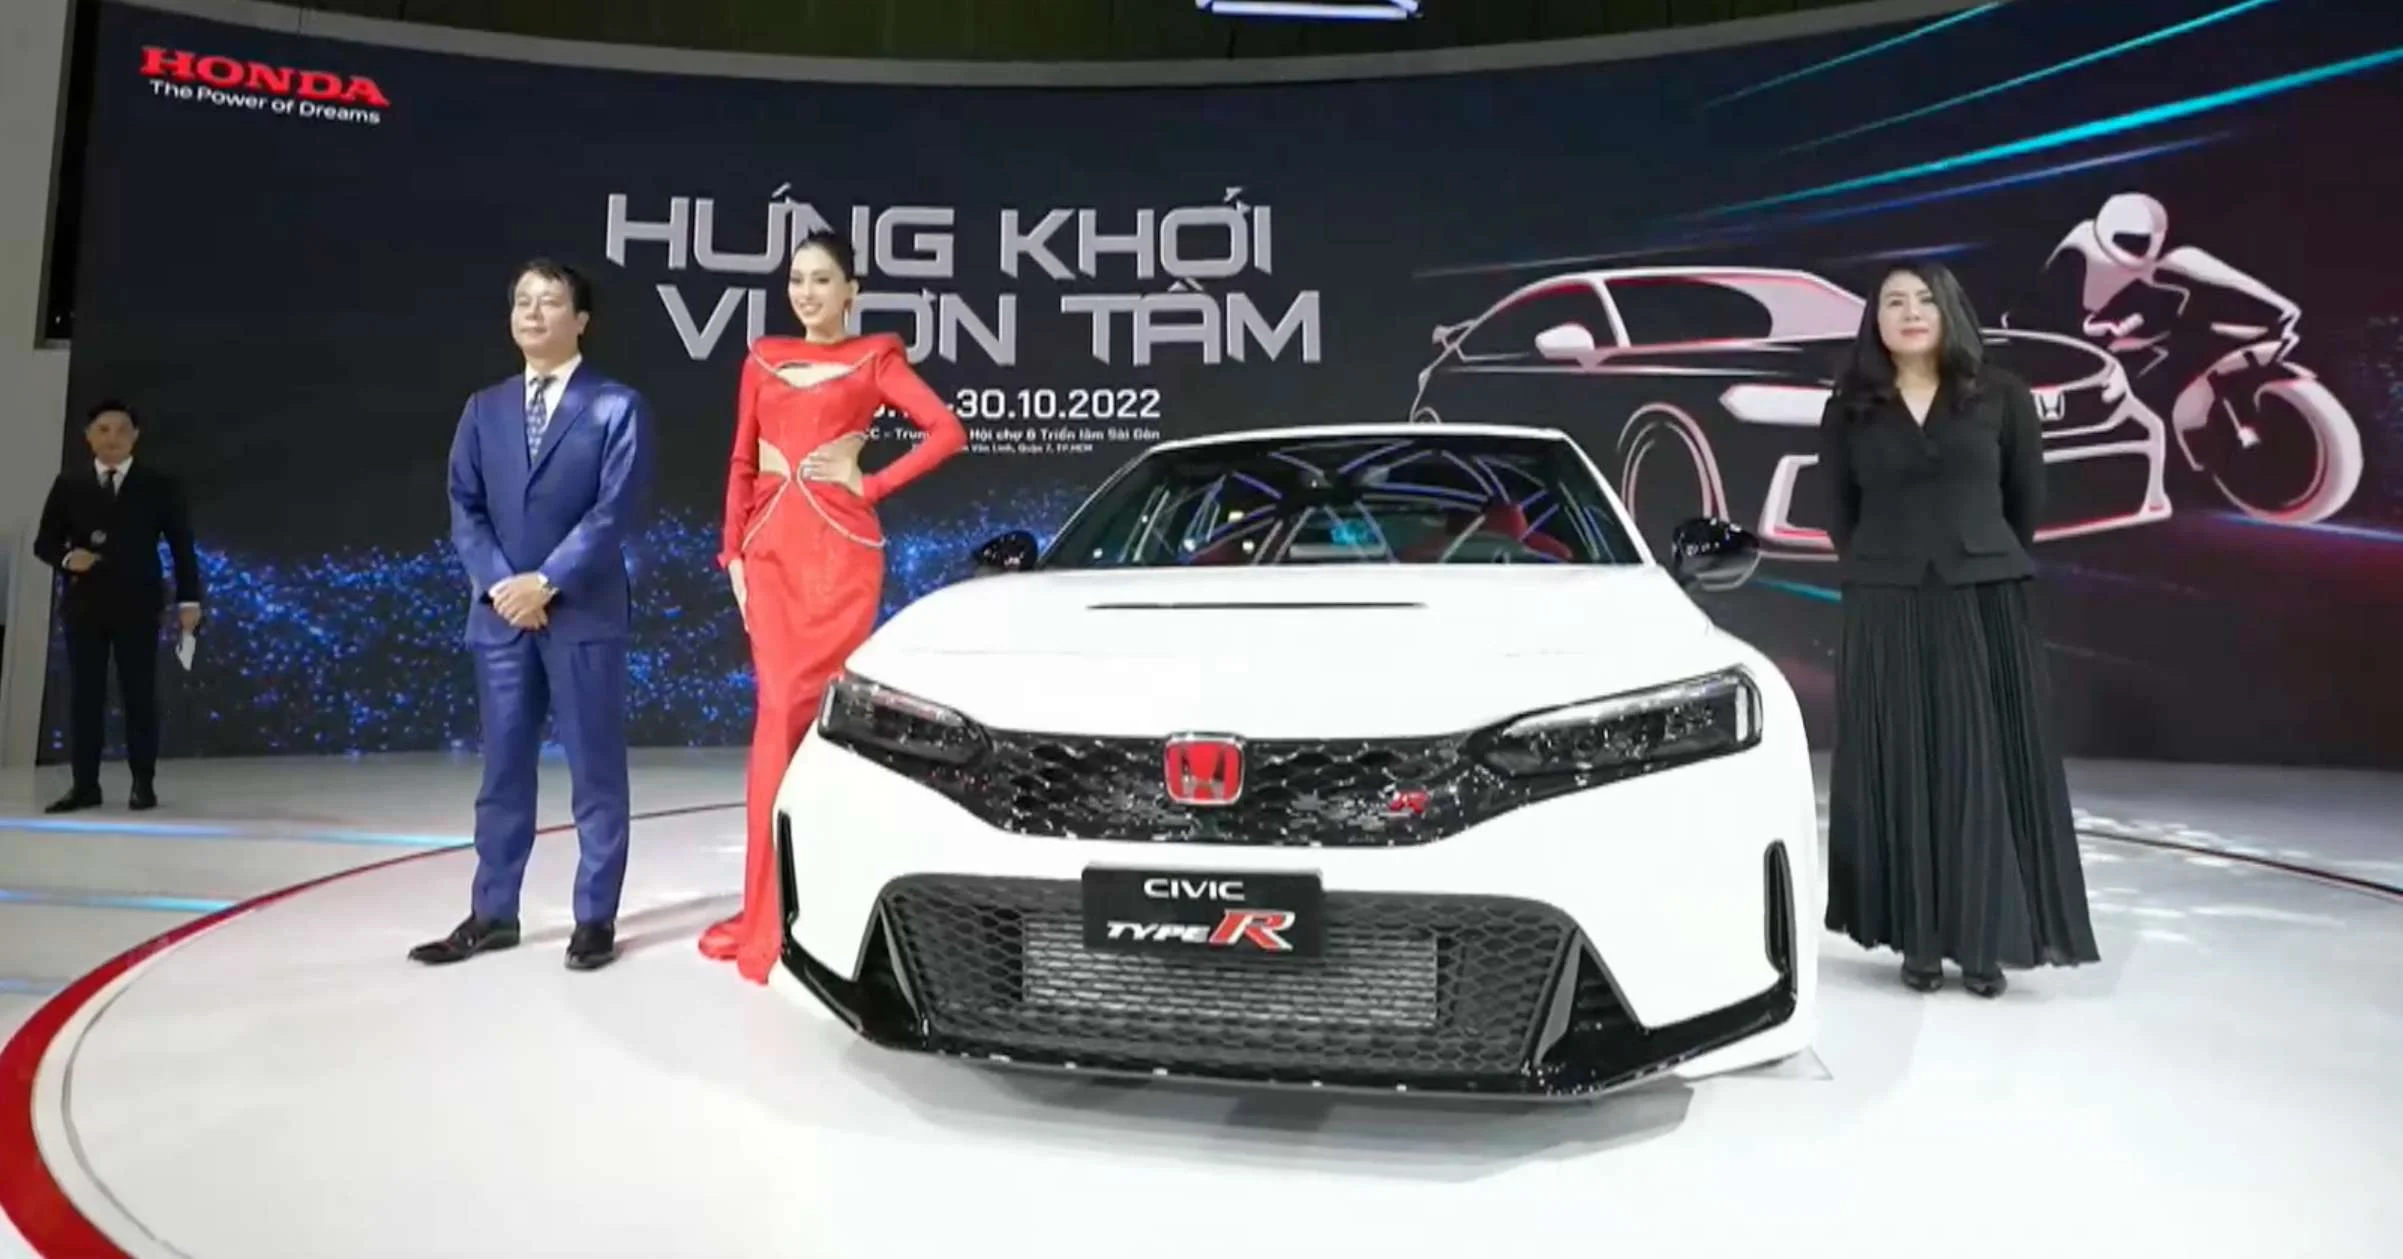 Honda Civic Type R Generasi Terbaru Sudah Hadir Di Asia Tenggara, Ini Negara Pertamanya